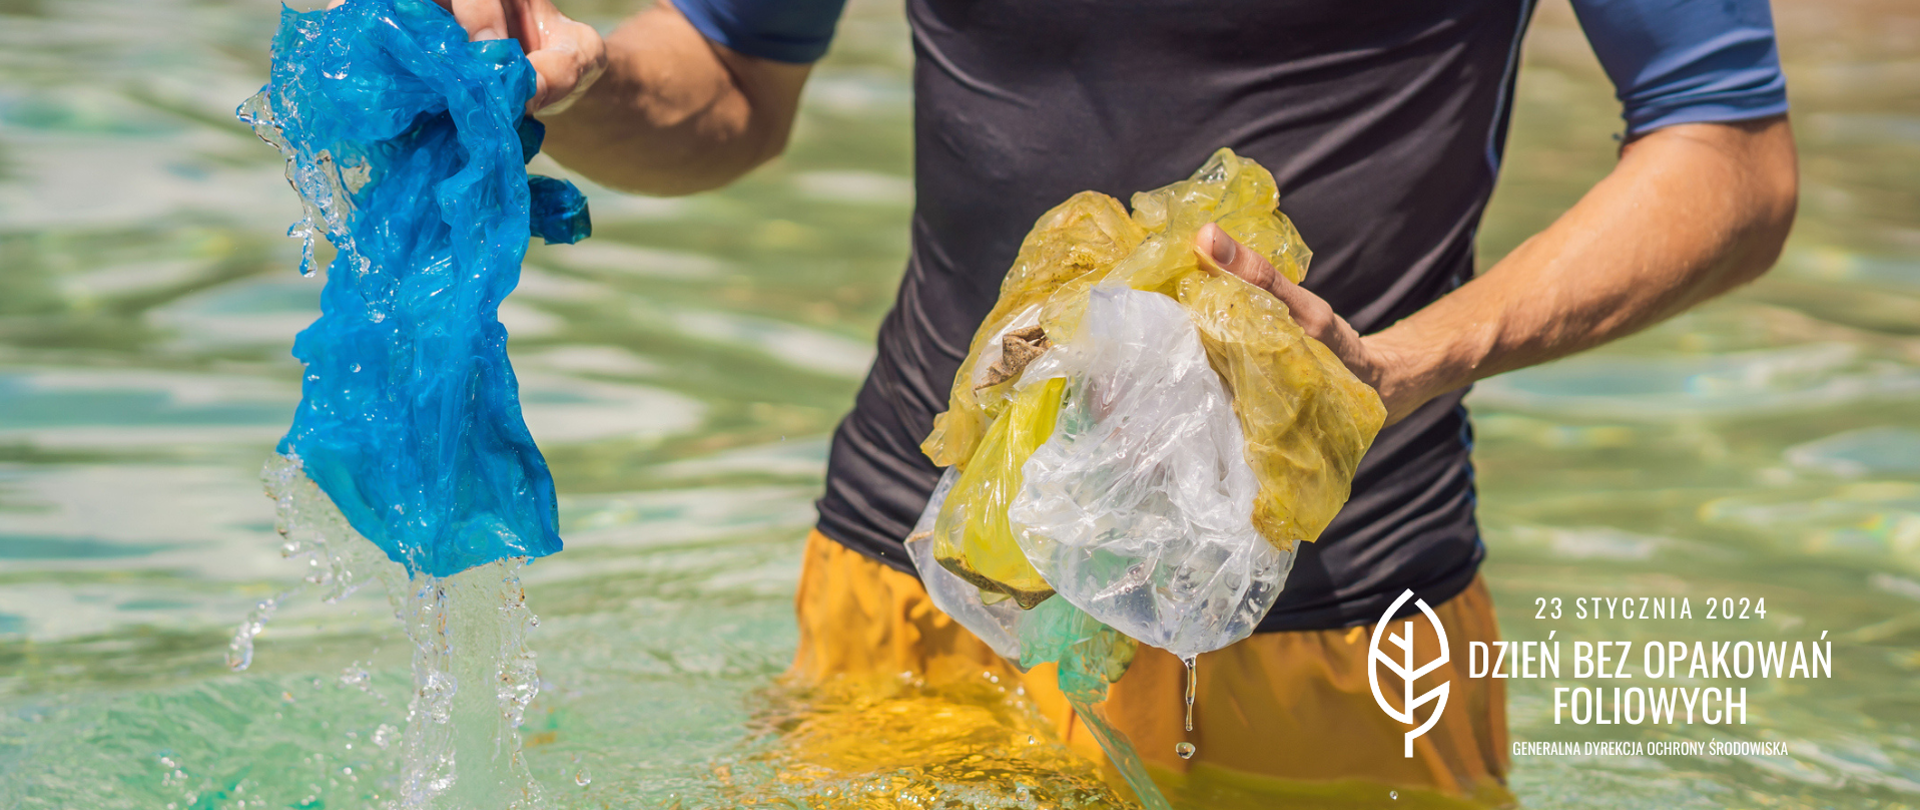 Mężczyzna w sportowym stroju stoi po biodra w wodzie,. W rękach trzyma ociekające woda foliowe woreczki, które wyjął z wody.